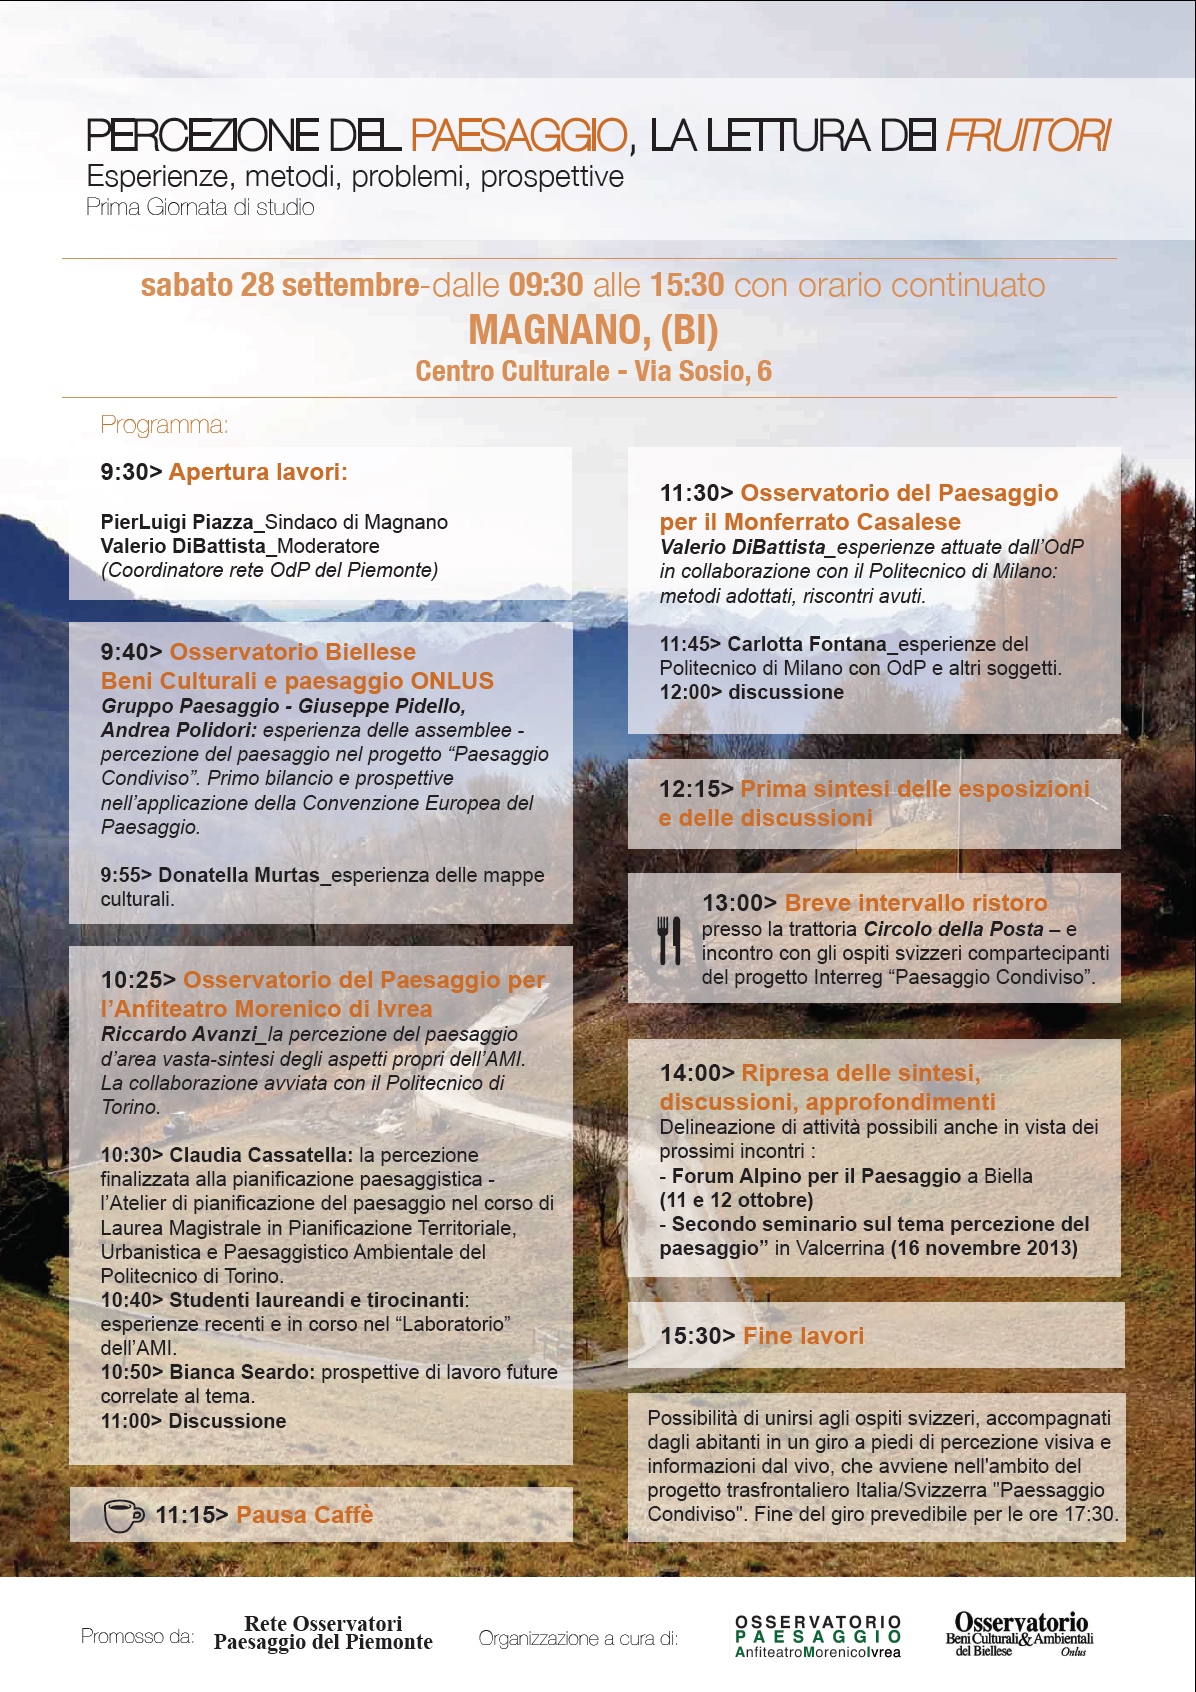 Seminario su "Percezione del paesaggio, la lettura dei fruitori. Esperienze, metodi, problemi, prospettive" a Magnano biellese, sabato 28 settembre 2013.